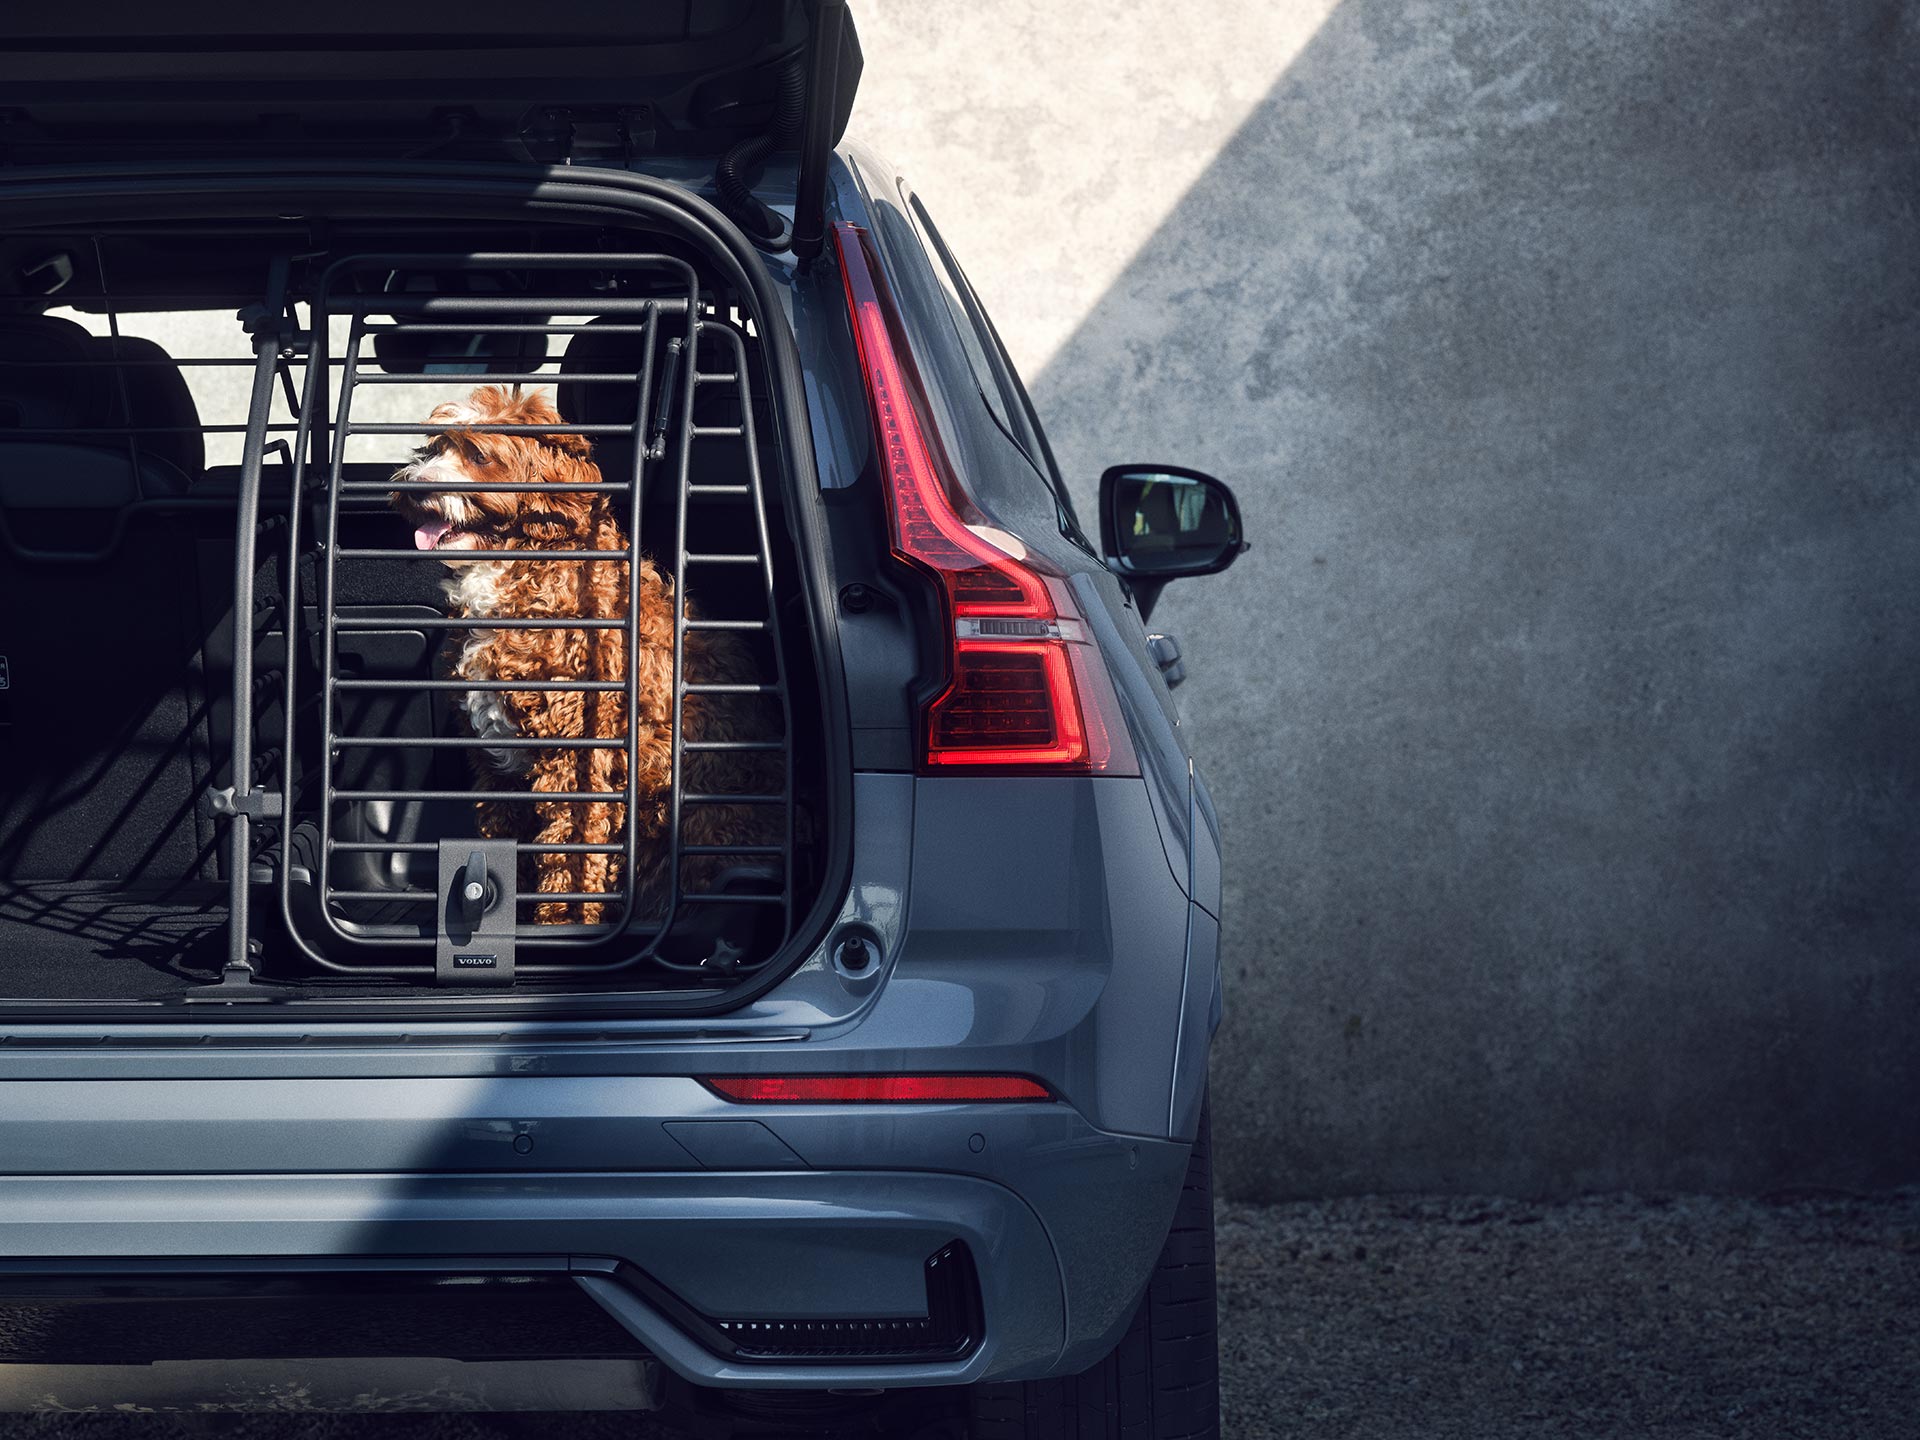 يجلس الكلب ذو اللون النحاسي في قفص آمن للكلاب، وهو ملحق مصمم خصيصًا لسلامة وراحة الحيوانات الأليفة التي تسافر في سيارات فولفو.